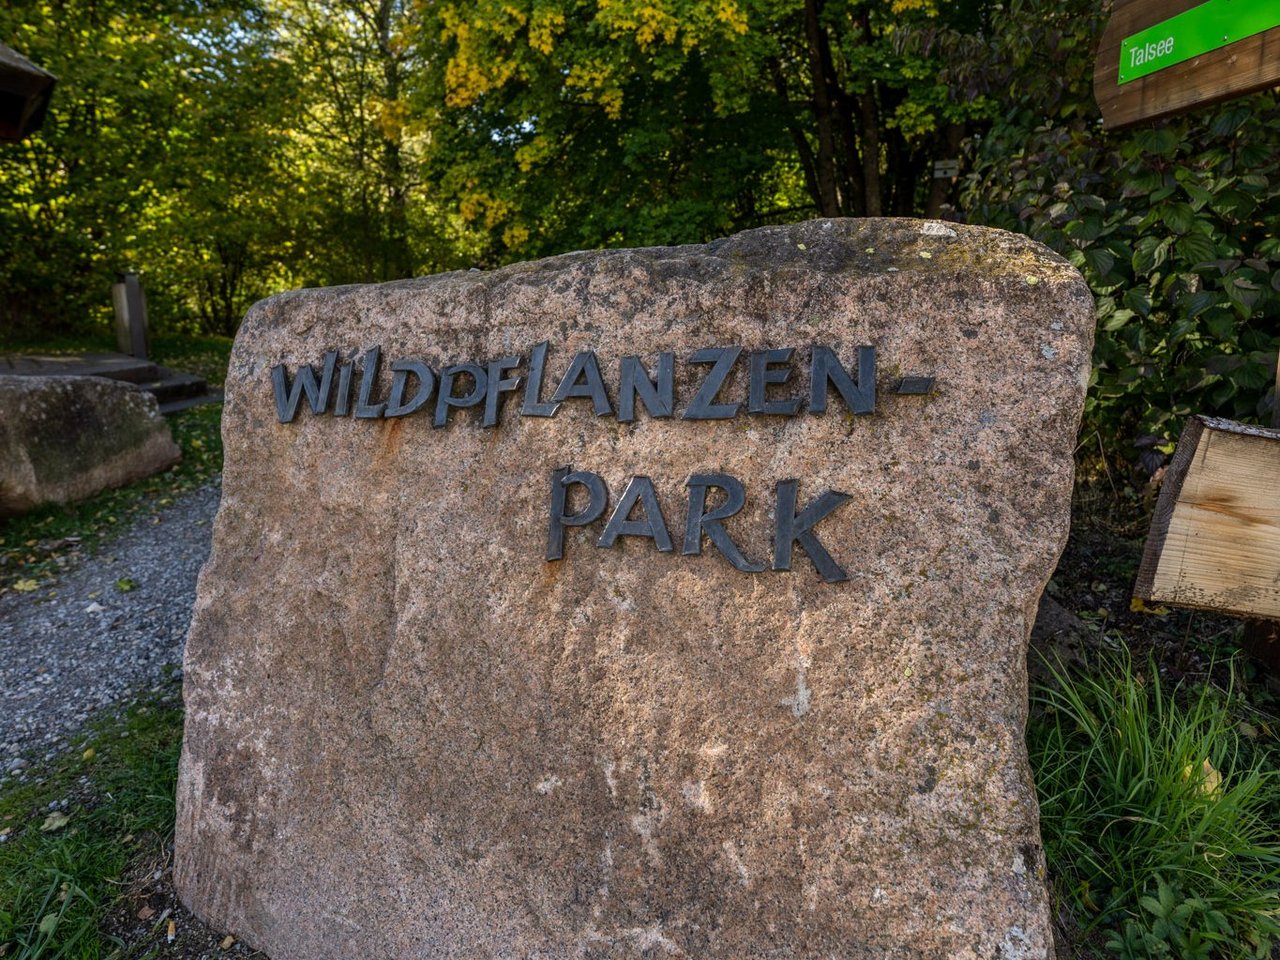 Stein mit Aufschrift Wildpflanzenpark im Hintergrund grün 